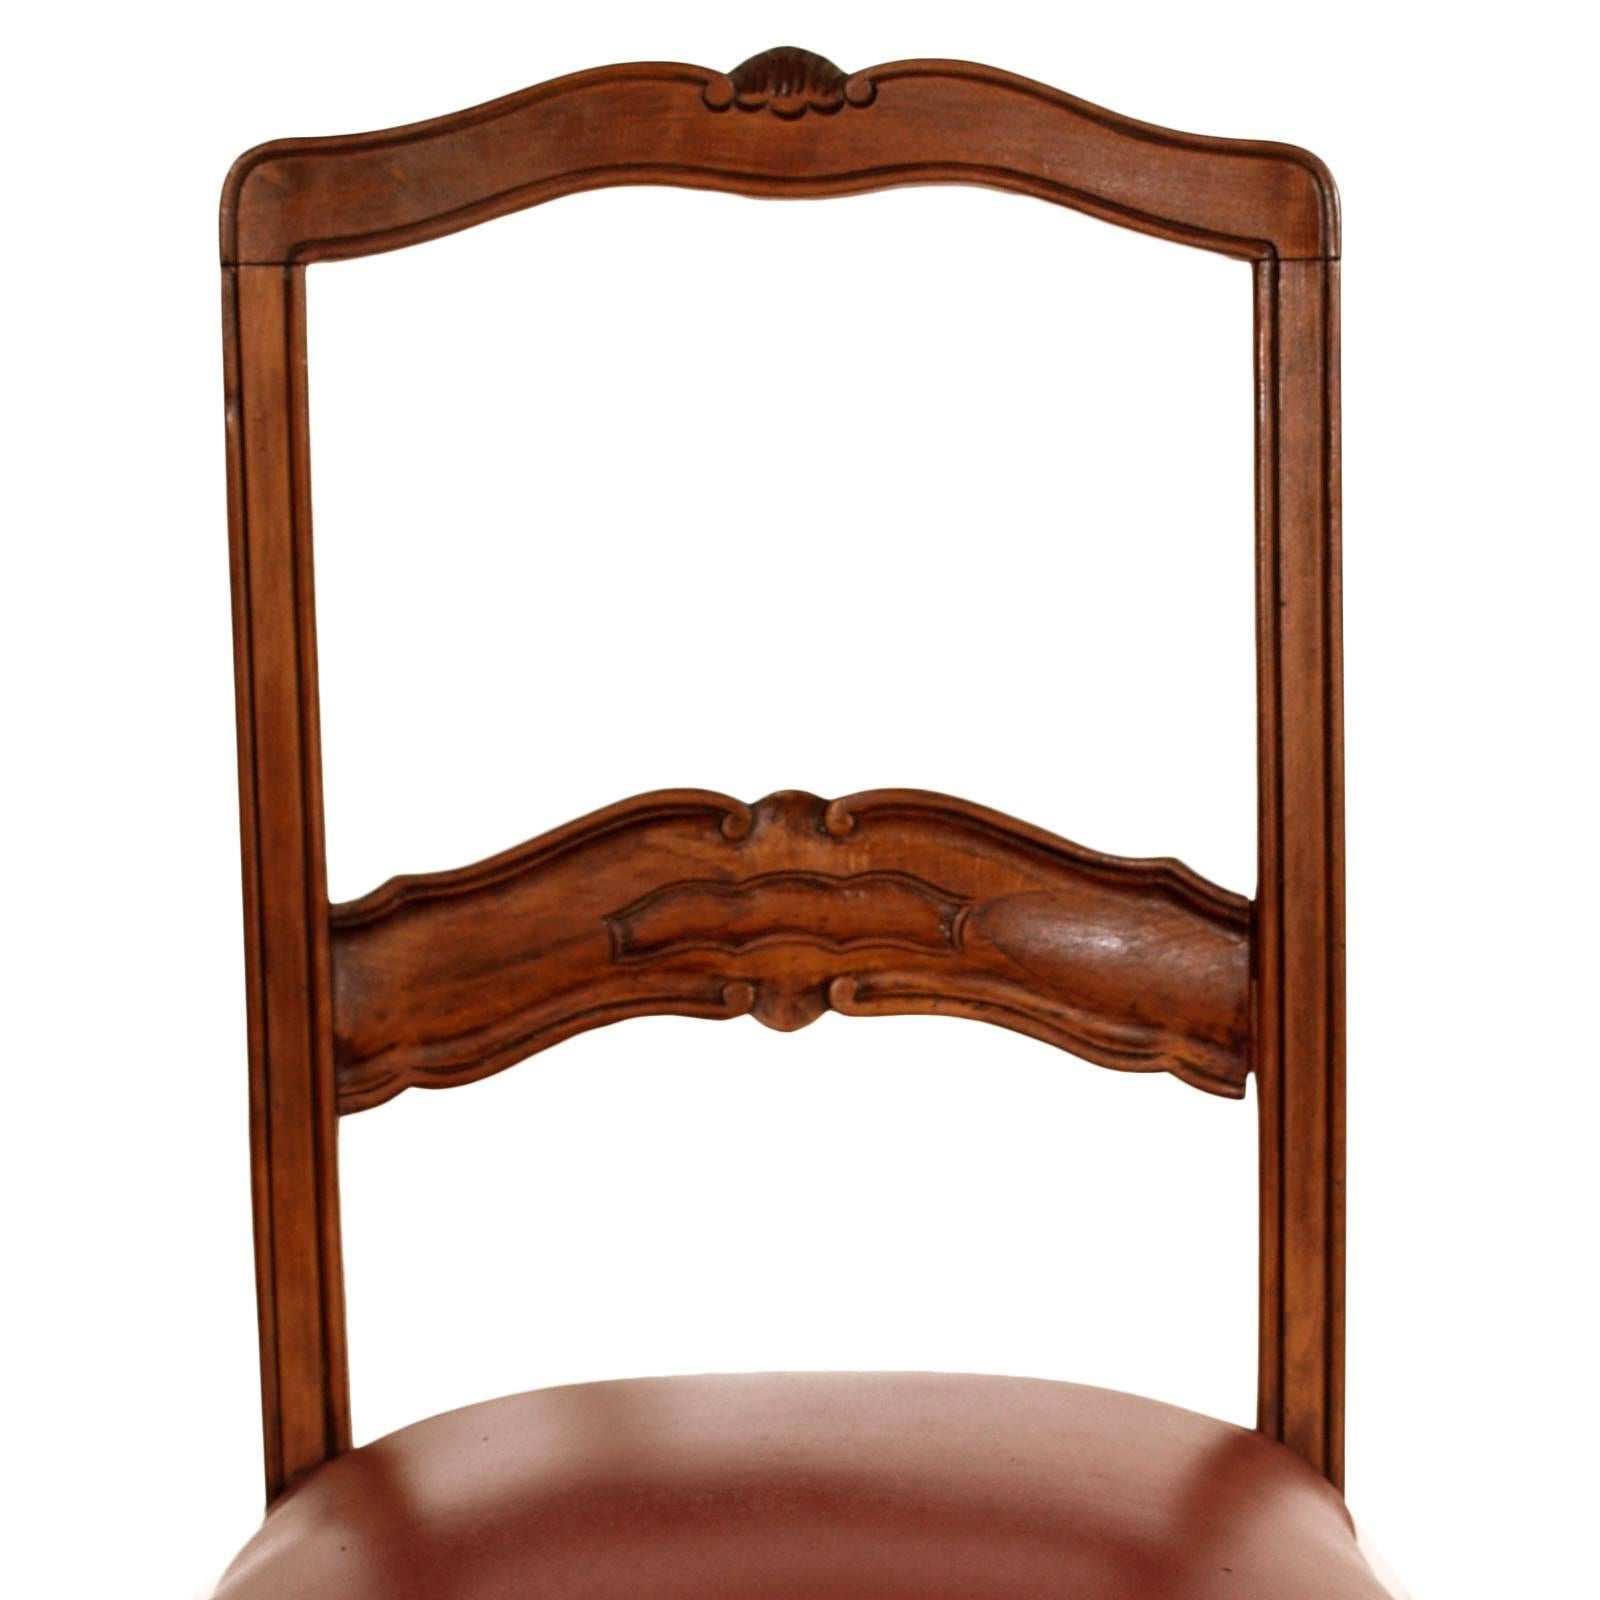 1920er Jahre, Paar Stühle restauriert und in Wachs poliert, feines handgeschnitztes Nussbaumholz, Sitz in originalem Leder der Zeit mit Riemen und Federn.
Geeignet als Schreibtisch oder für den Eingangsbereich oder das Schlafzimmer. Schlichte und